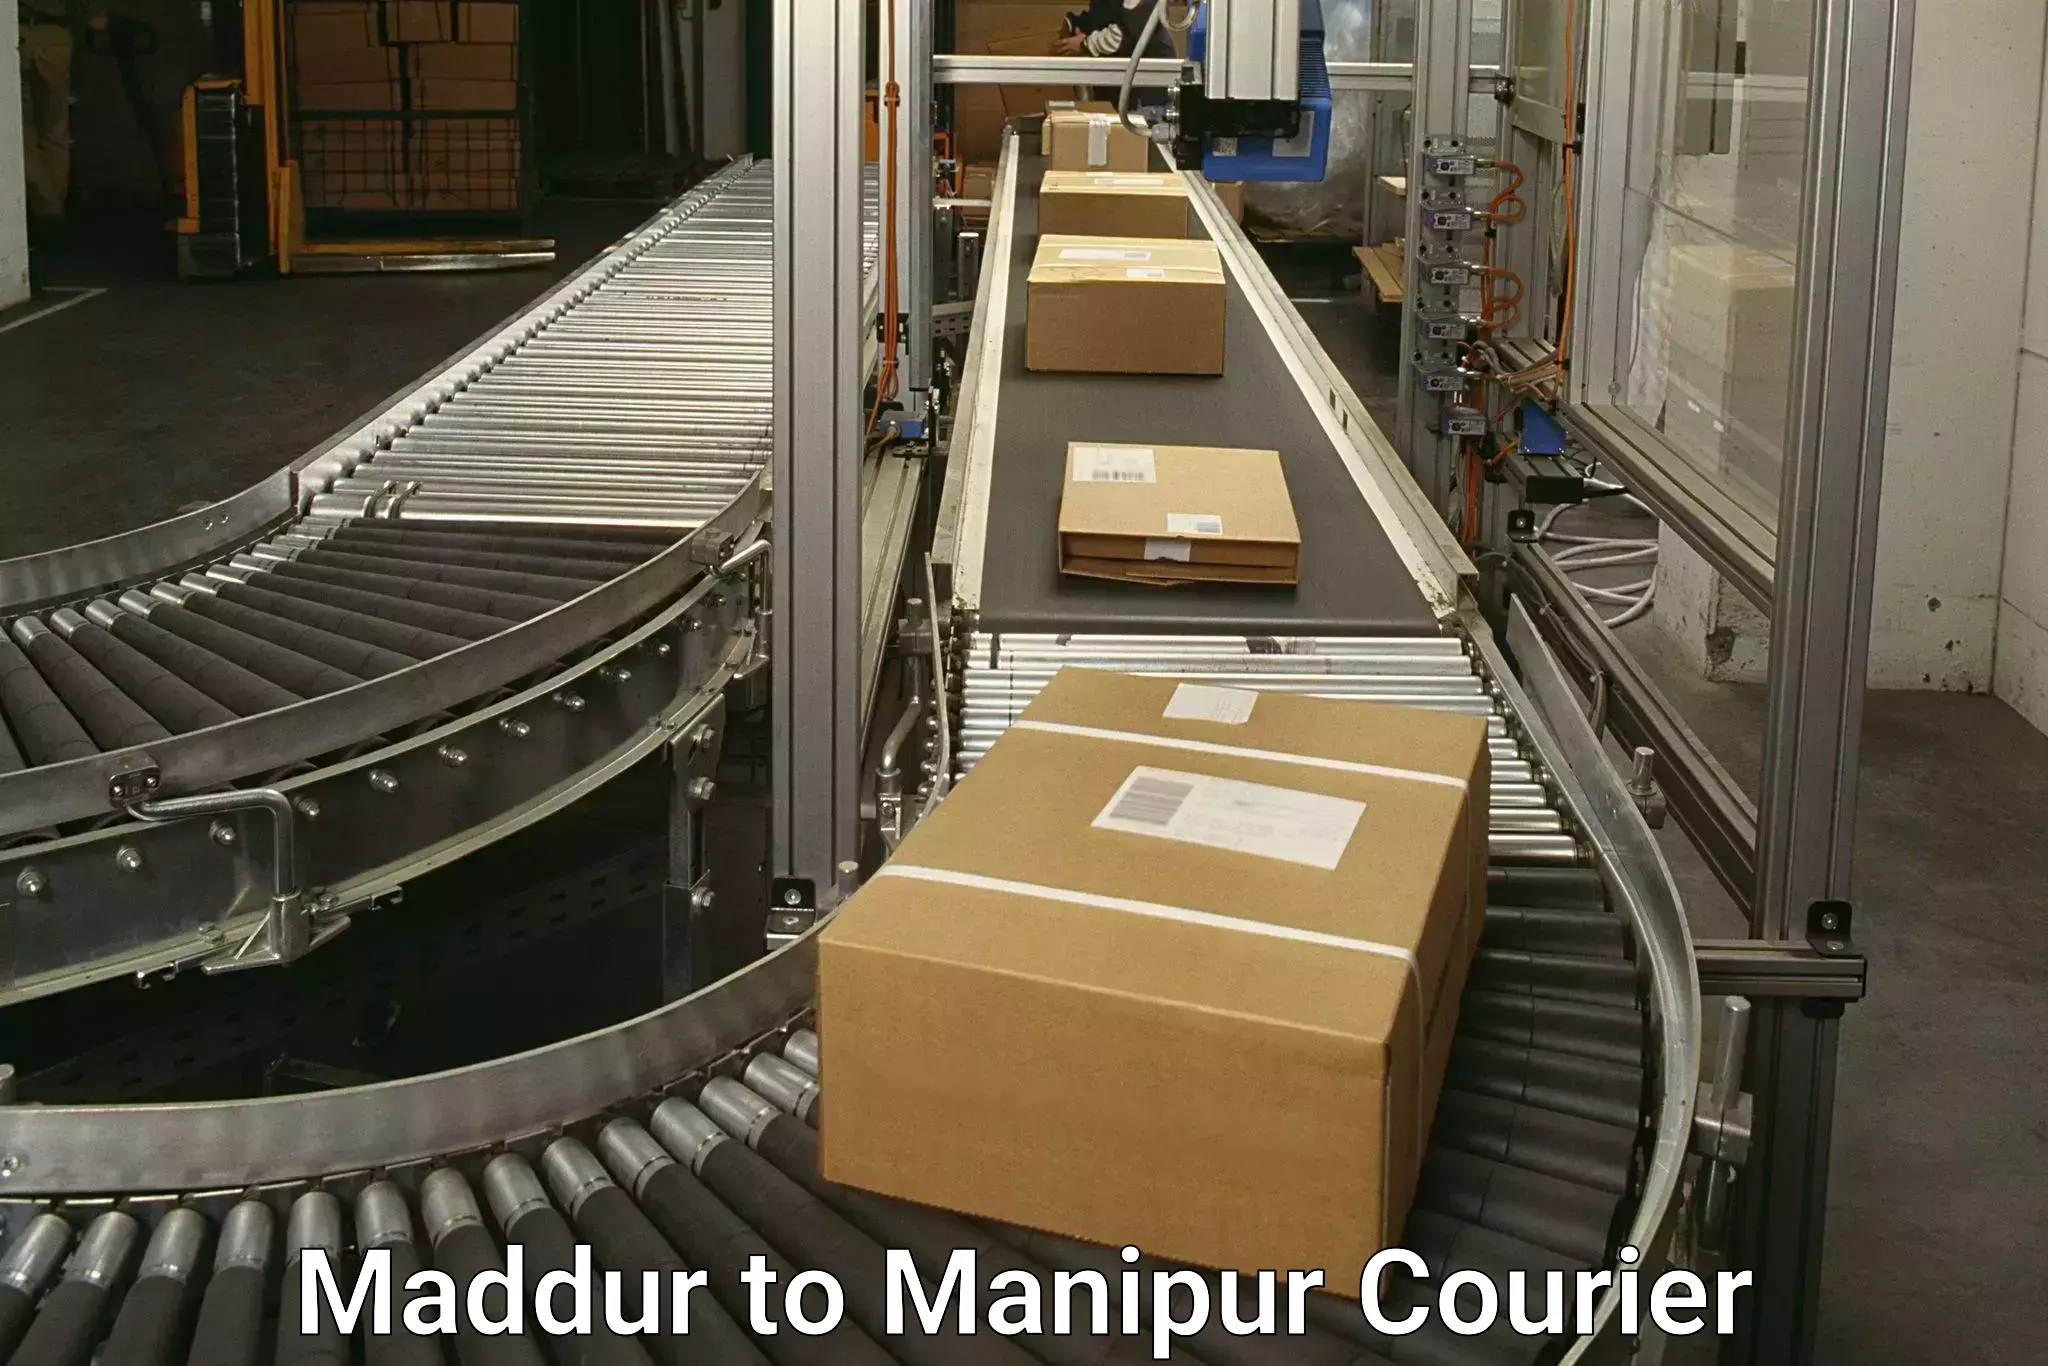 Nationwide courier service in Maddur to Churachandpur